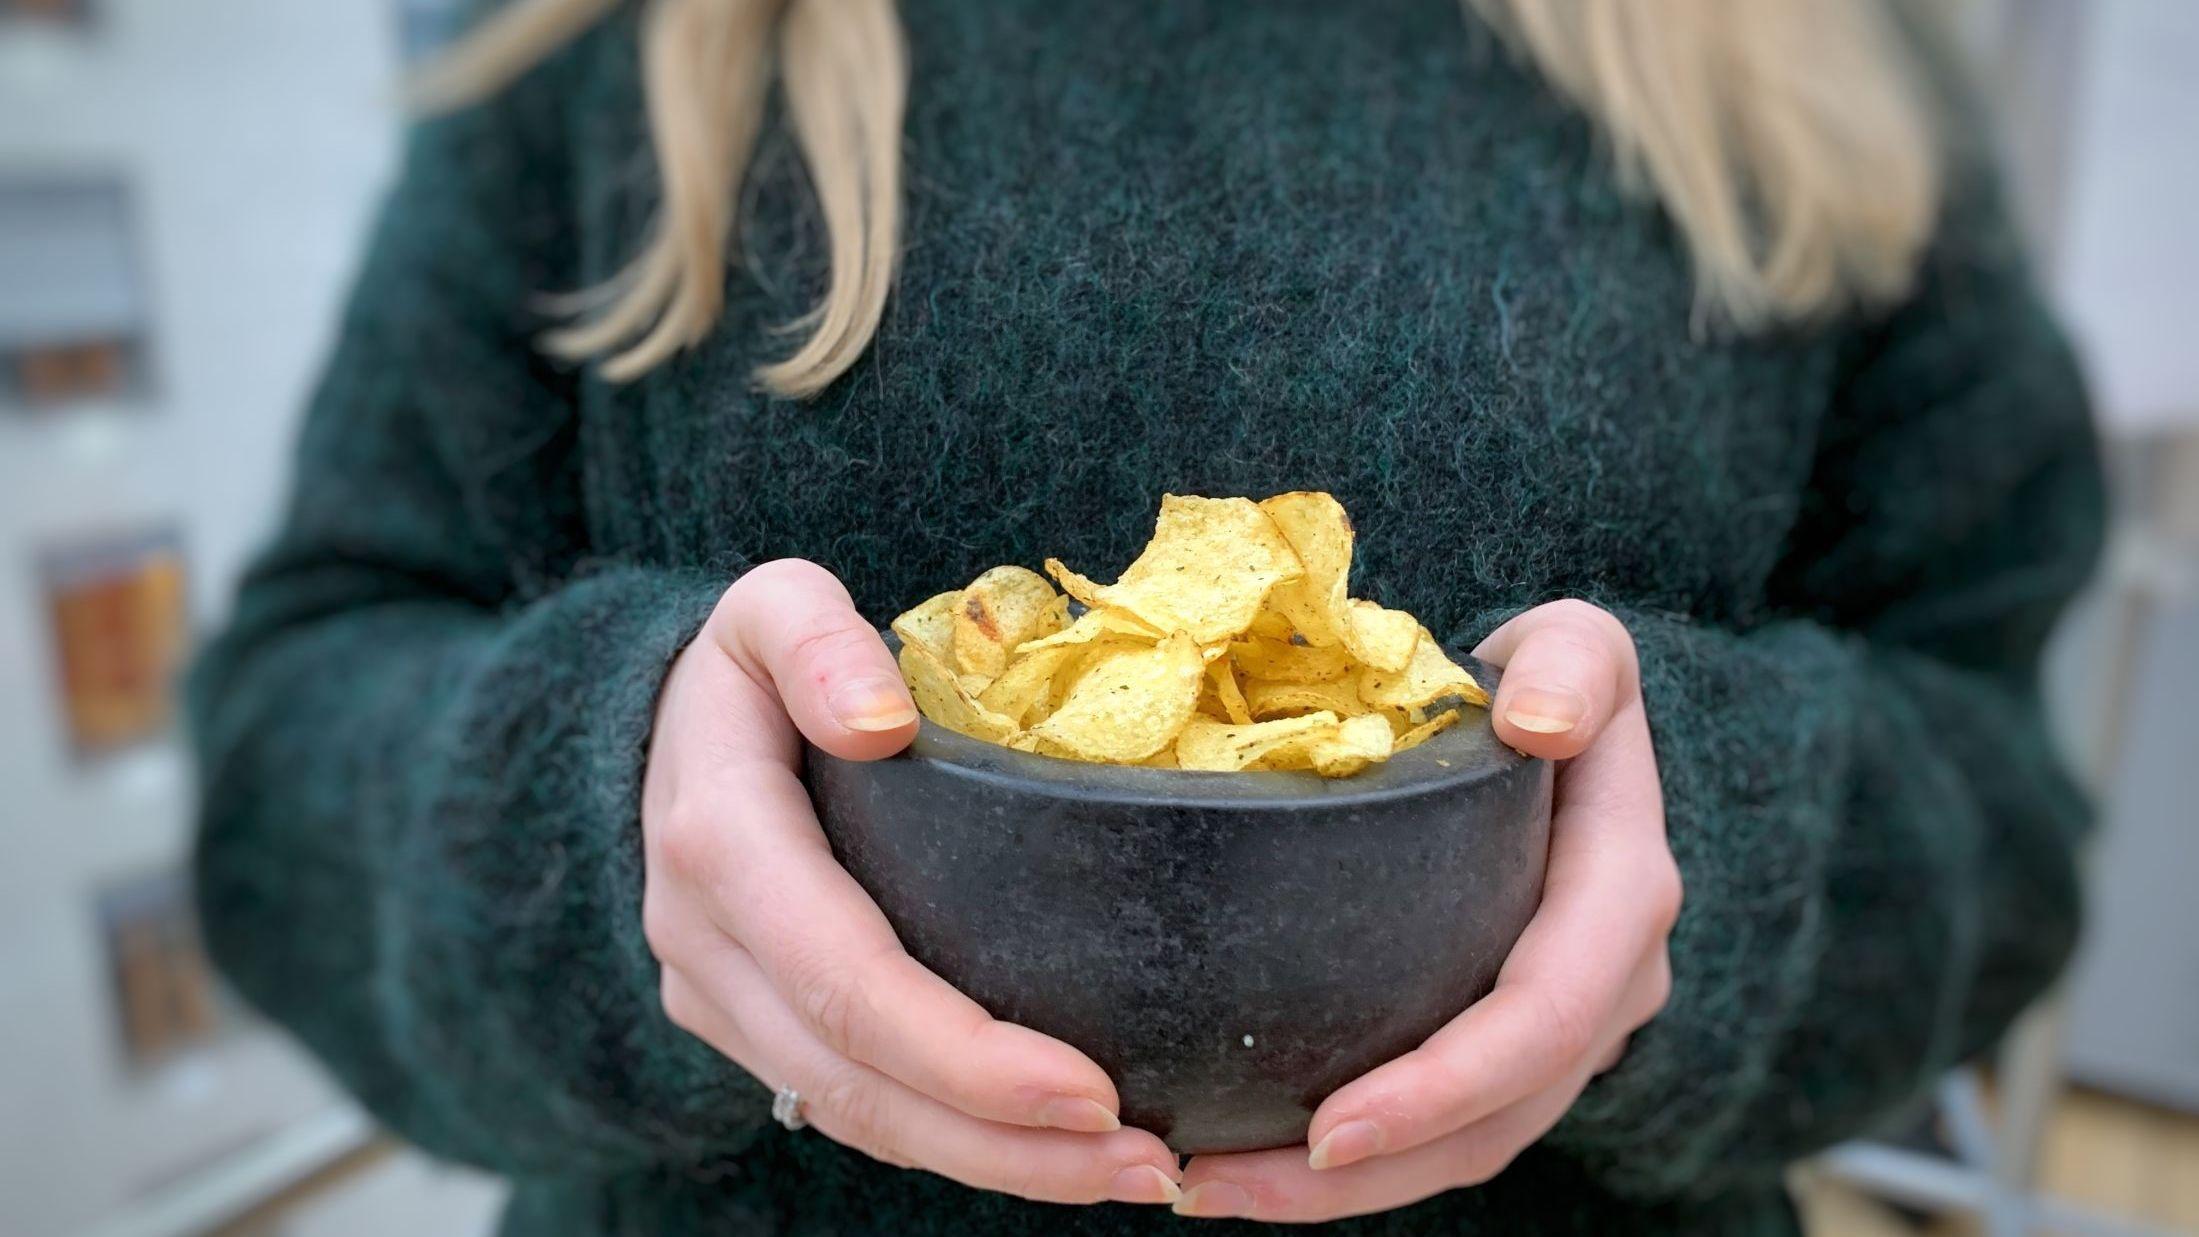 LITE HAVSMAK: Ifølge kolleger som tester chipsen smaker den salt potetgull, men lite av noe som minner om hav og tang. Foto: Tjodunn Dyrnes